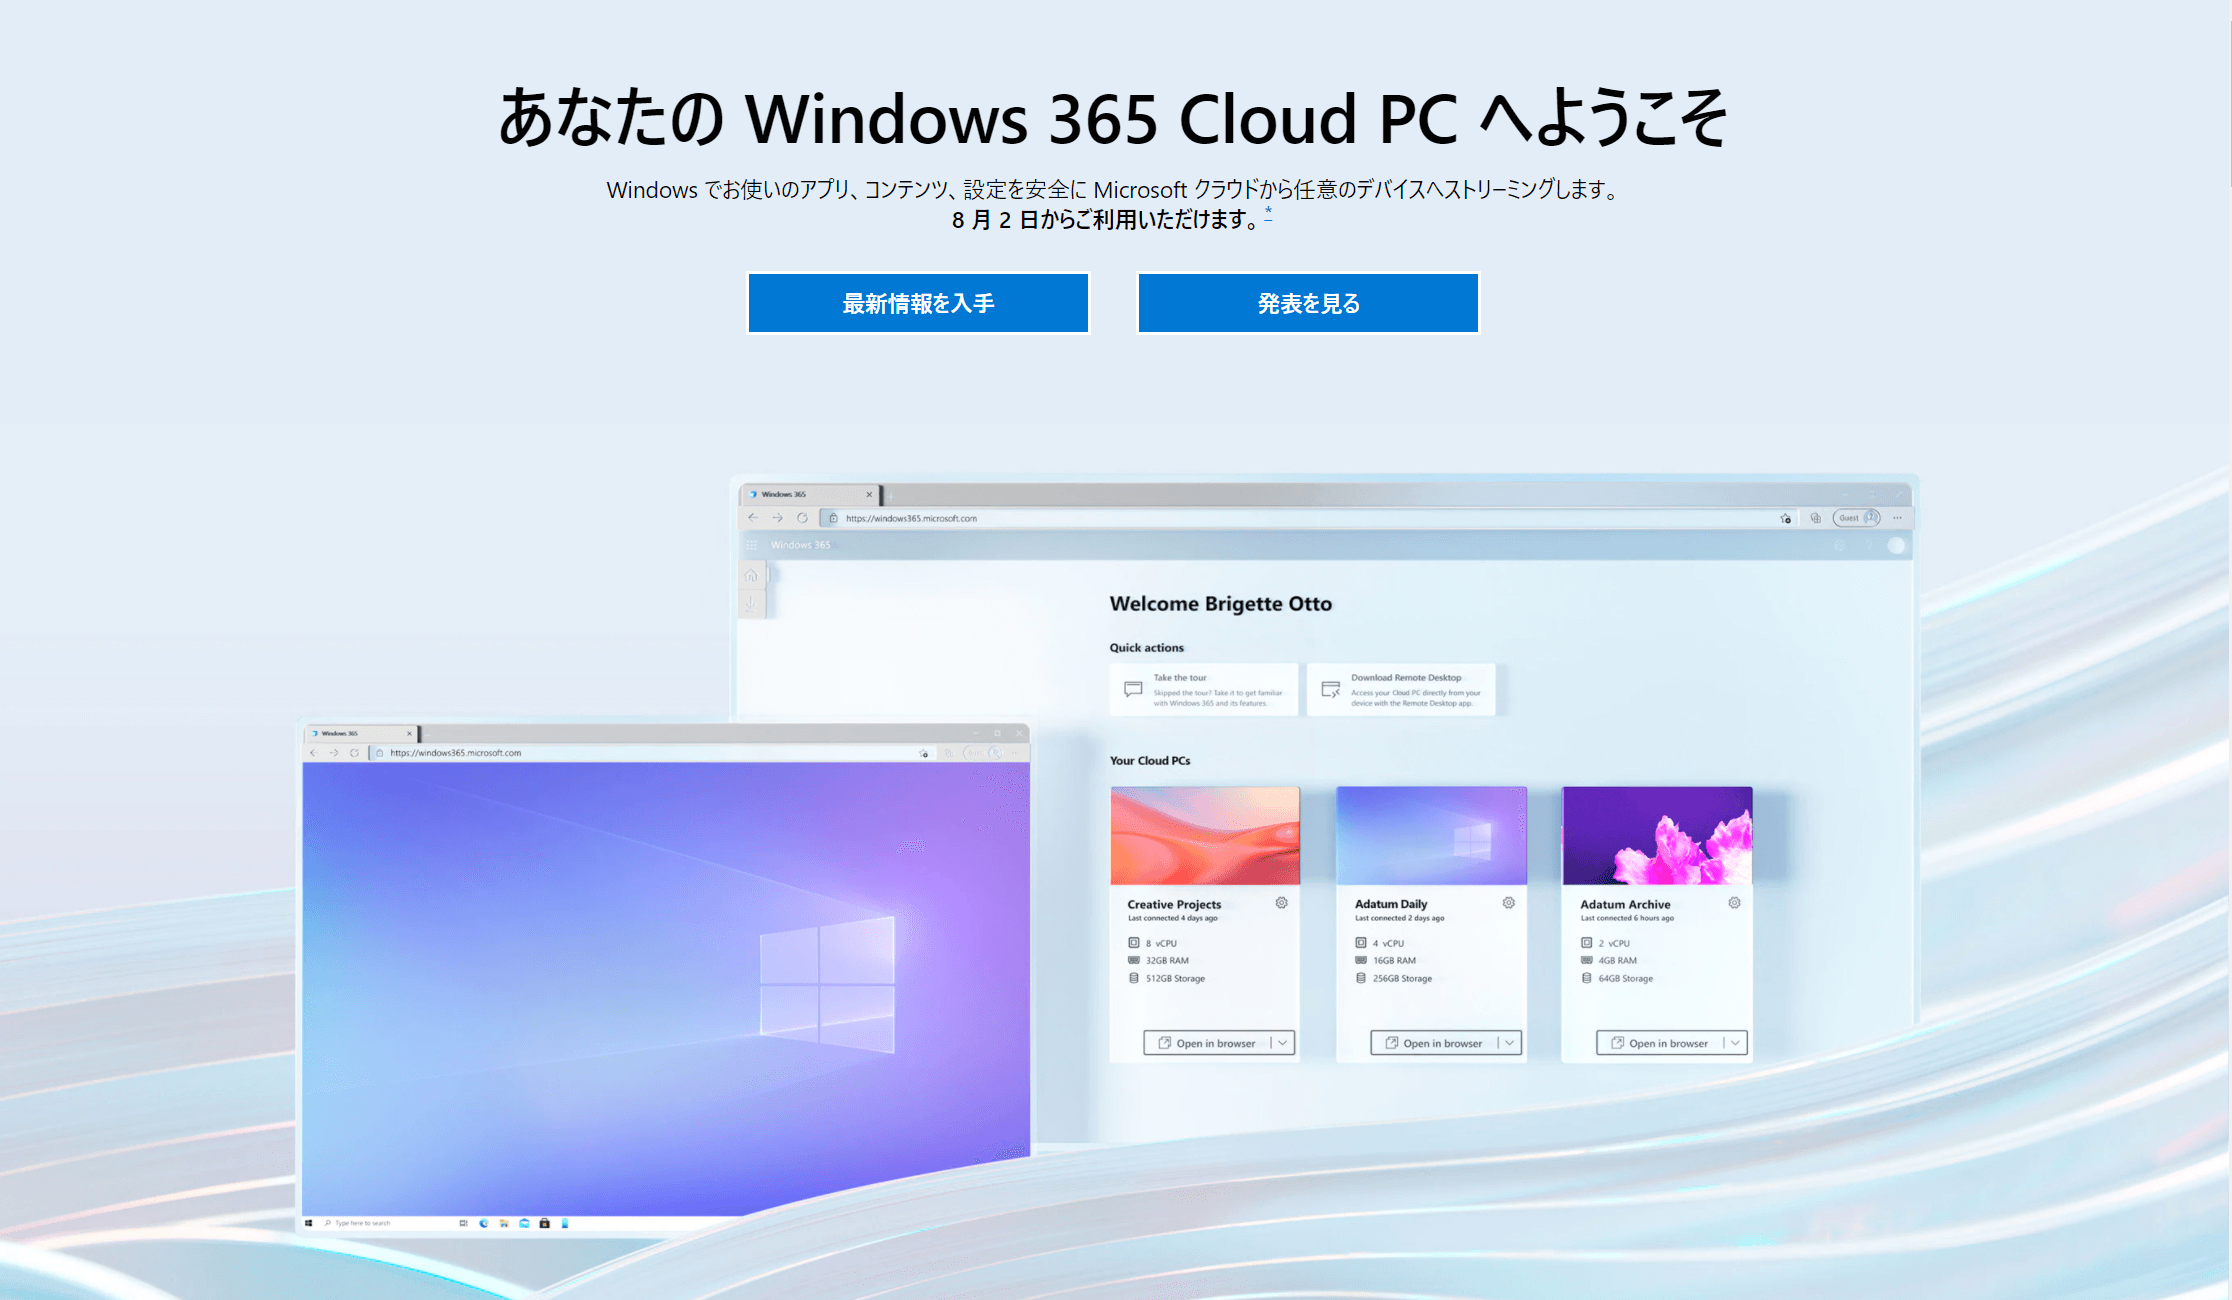 Microsoft社公式ホームページ「あなたの Windows 365 Cloud PC へようこそ」から画像引用